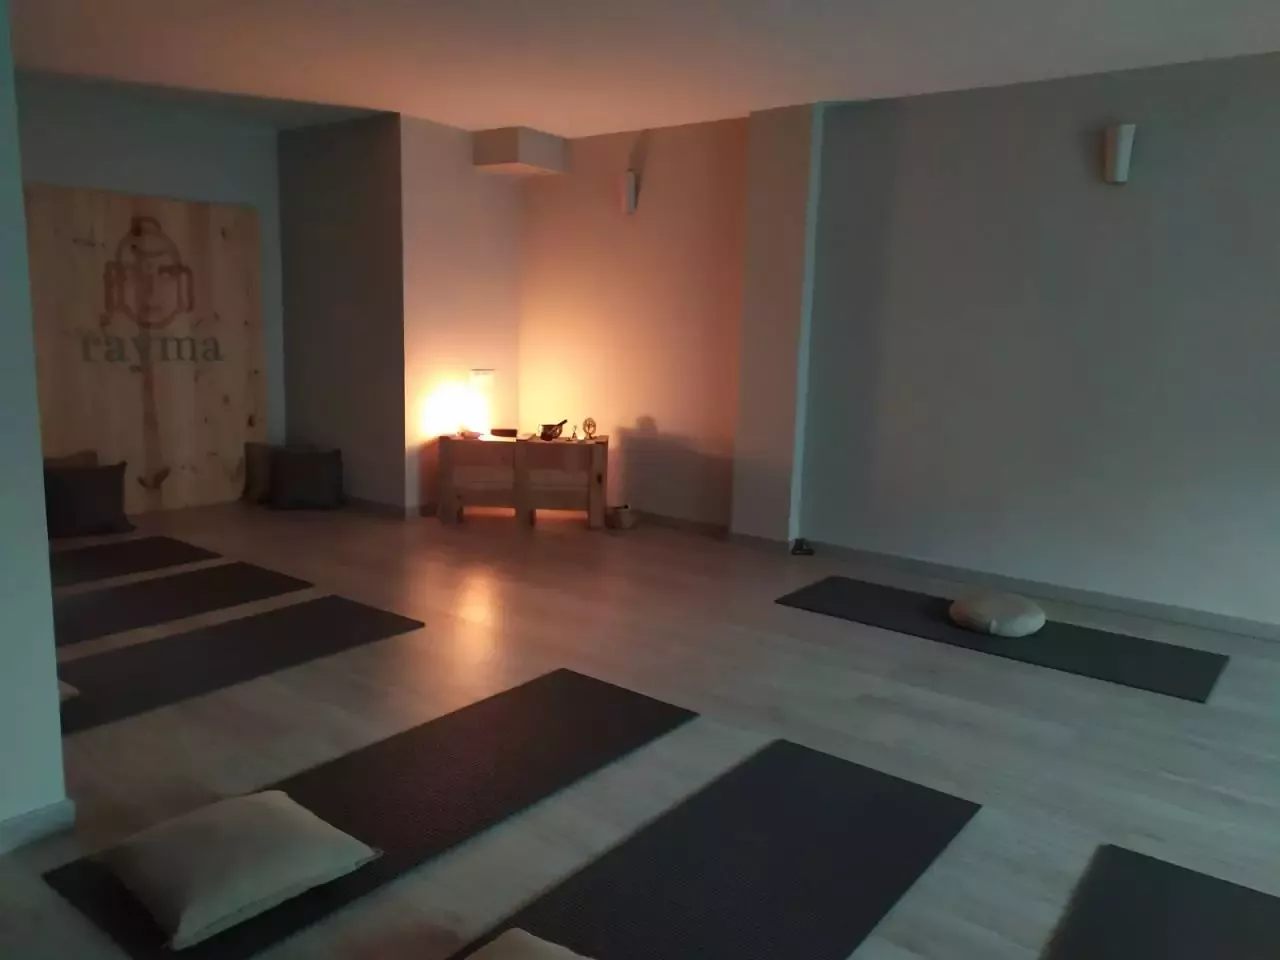 7. Rayma yoga  - Centro De Yoga  - Hatha Yoga  - Centros De Yoga